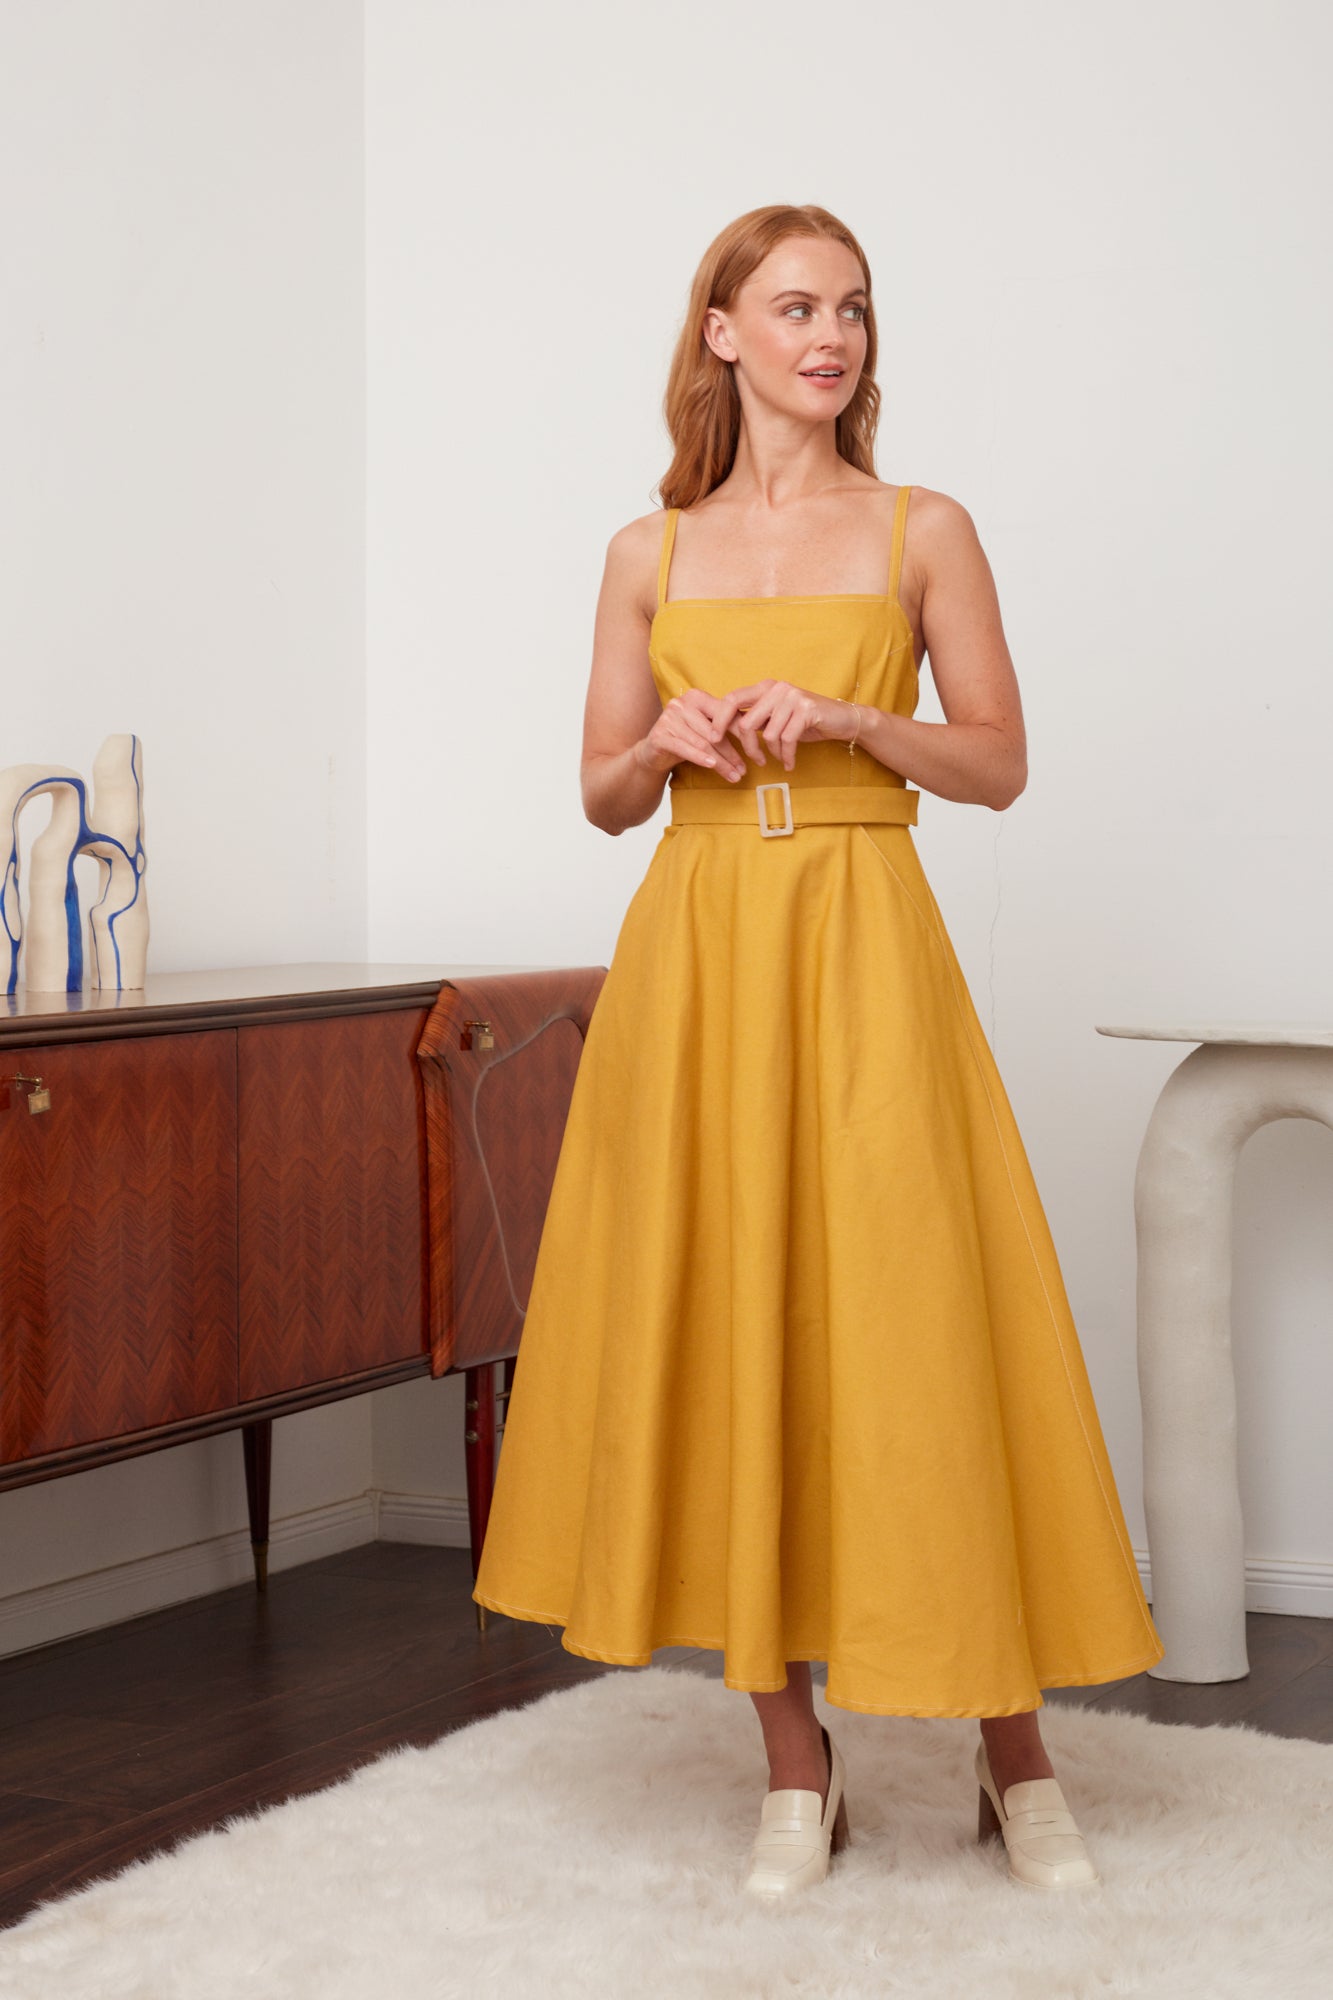 MATISSA Yellow Denim Circle Skirt Dress - Versatile Summer Outfit